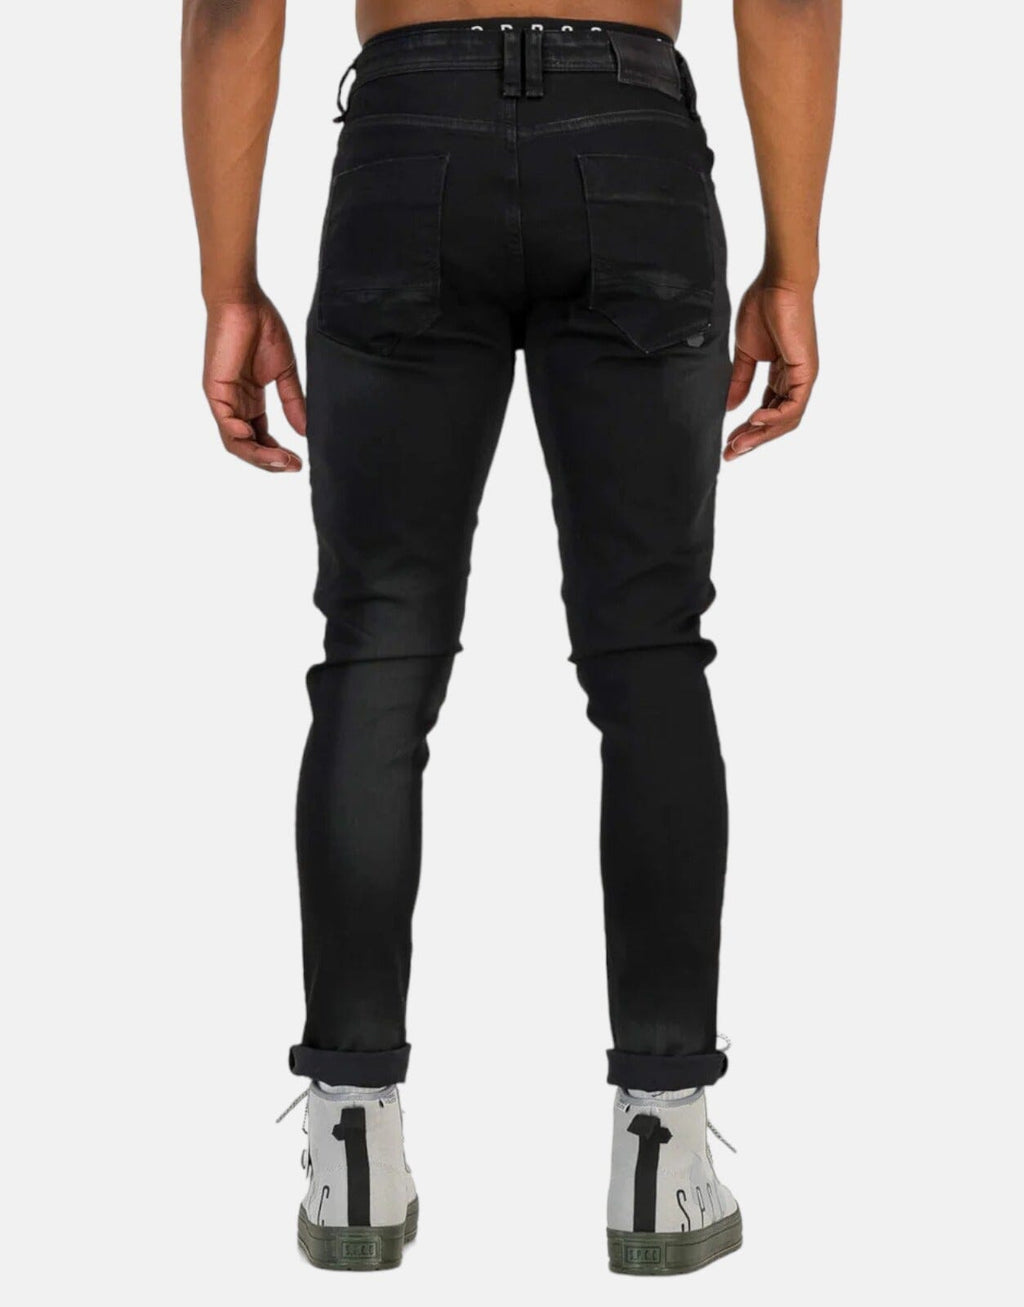 SPCC Rhynco Black Jeans – Subwear